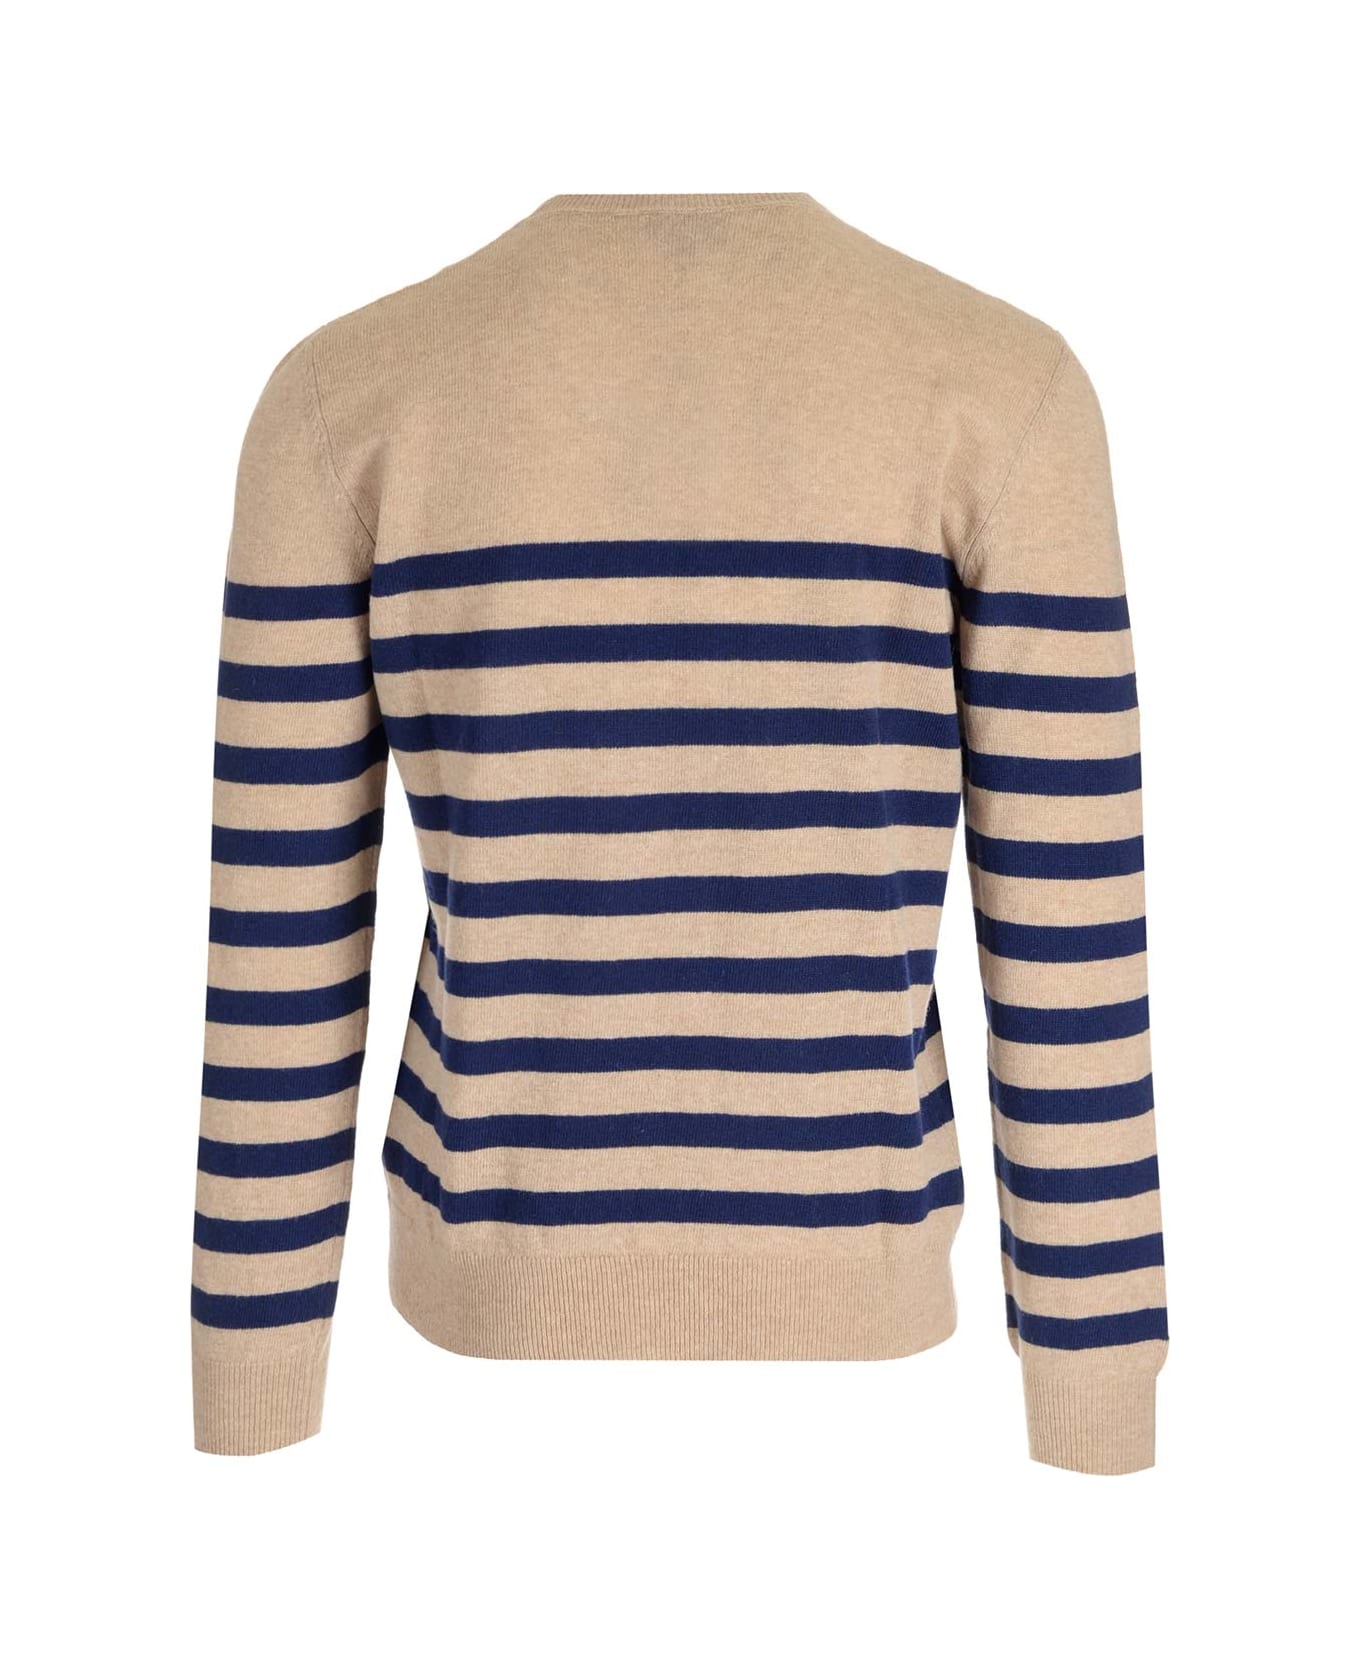 A.P.C. 'ismael' Striped Sweater - Beige/Dark Navy ニットウェア